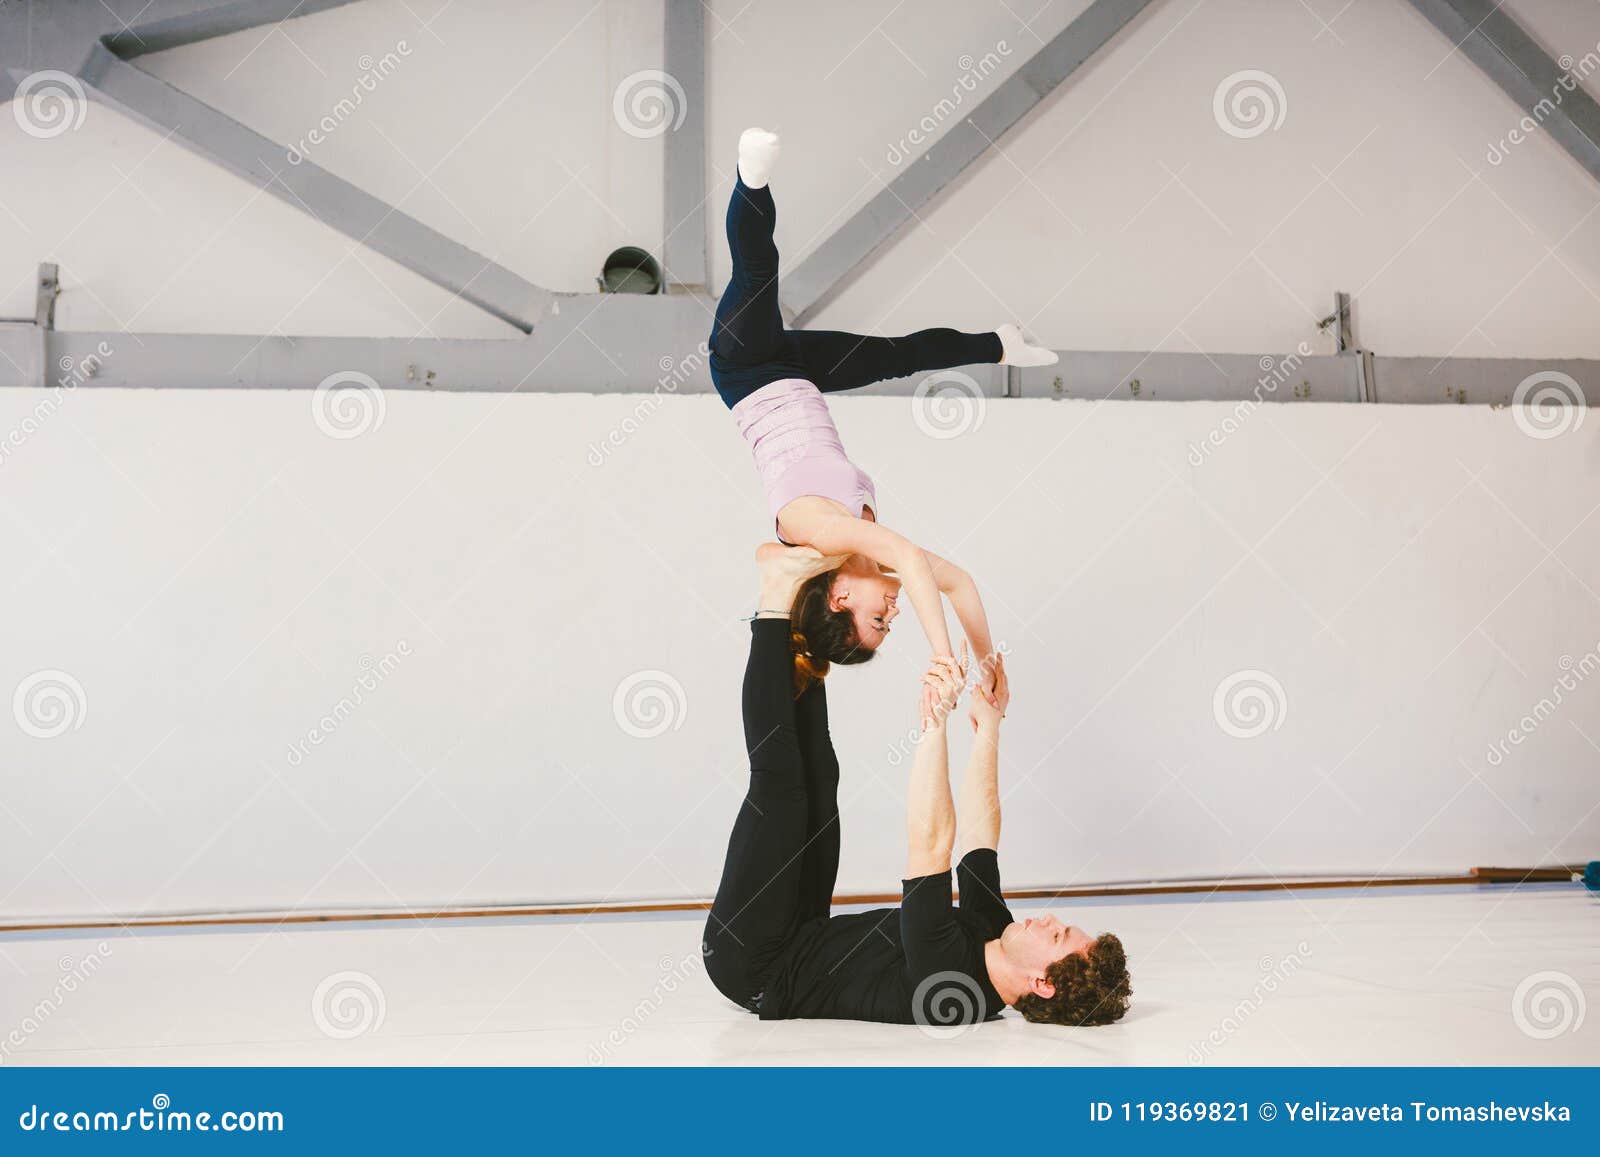 mats for acrobatics